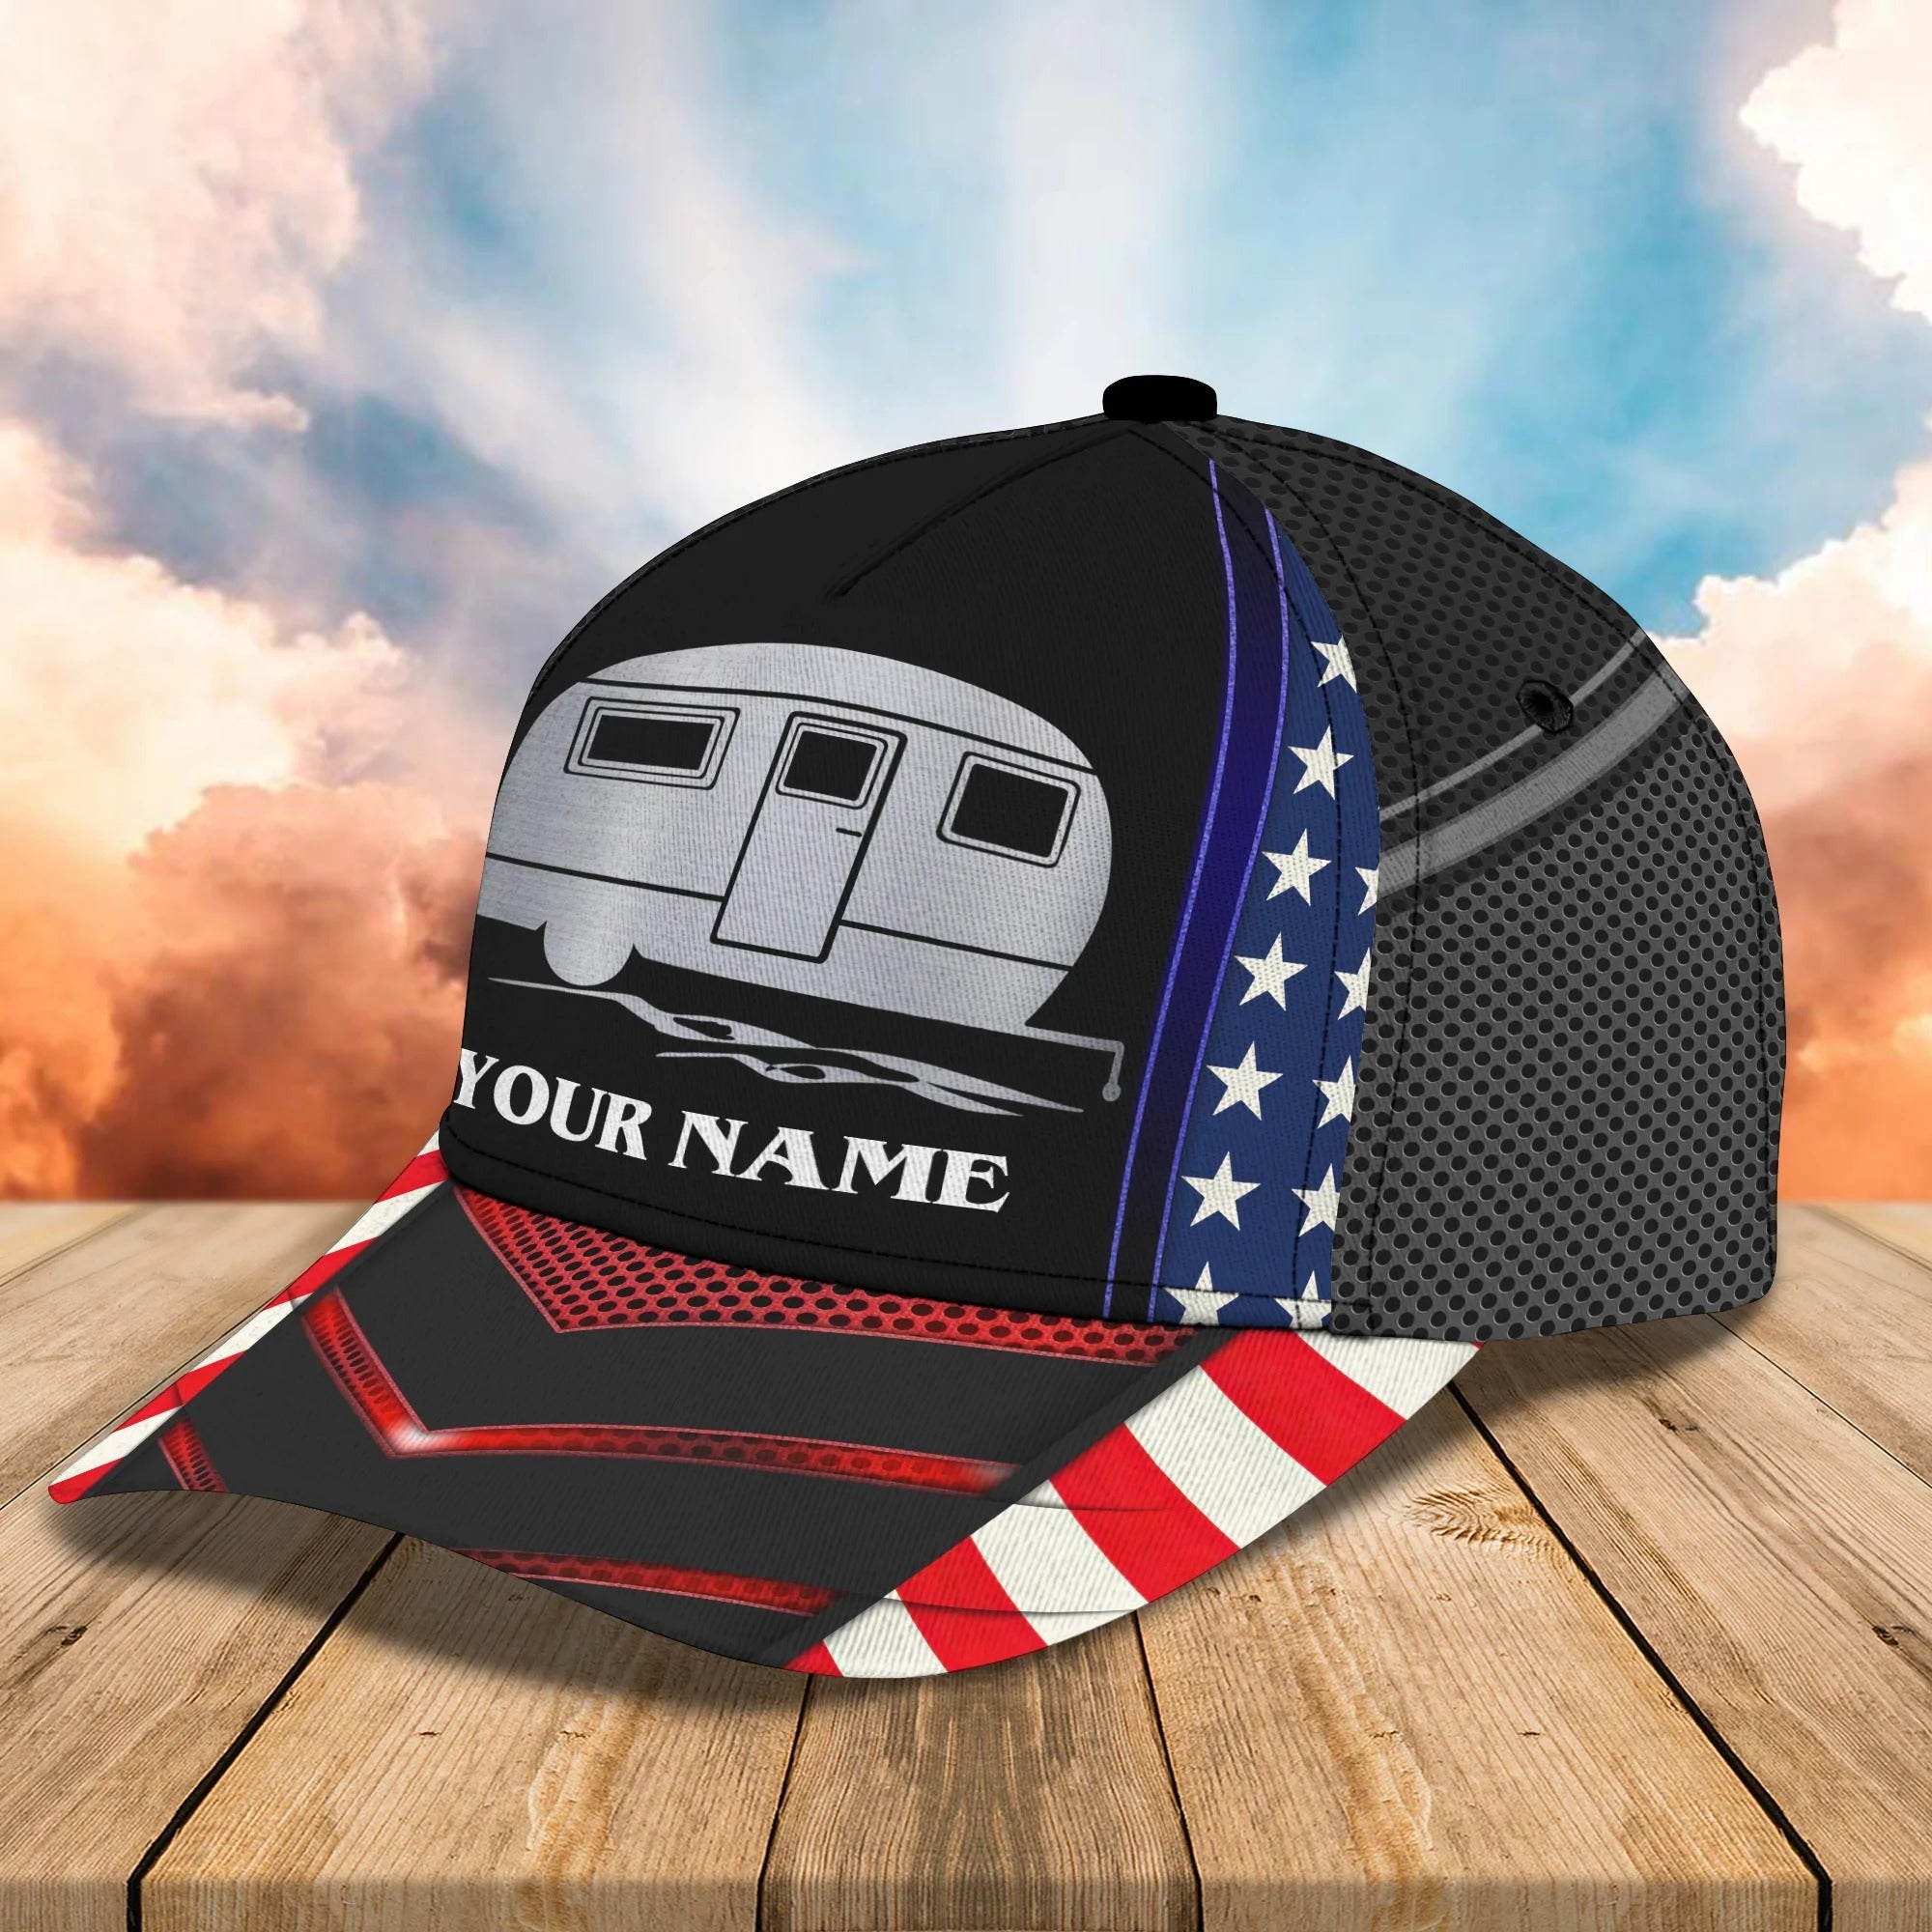 America Caravan Camping Car Baseball Cap Hat Personalized Name Cap For Camping